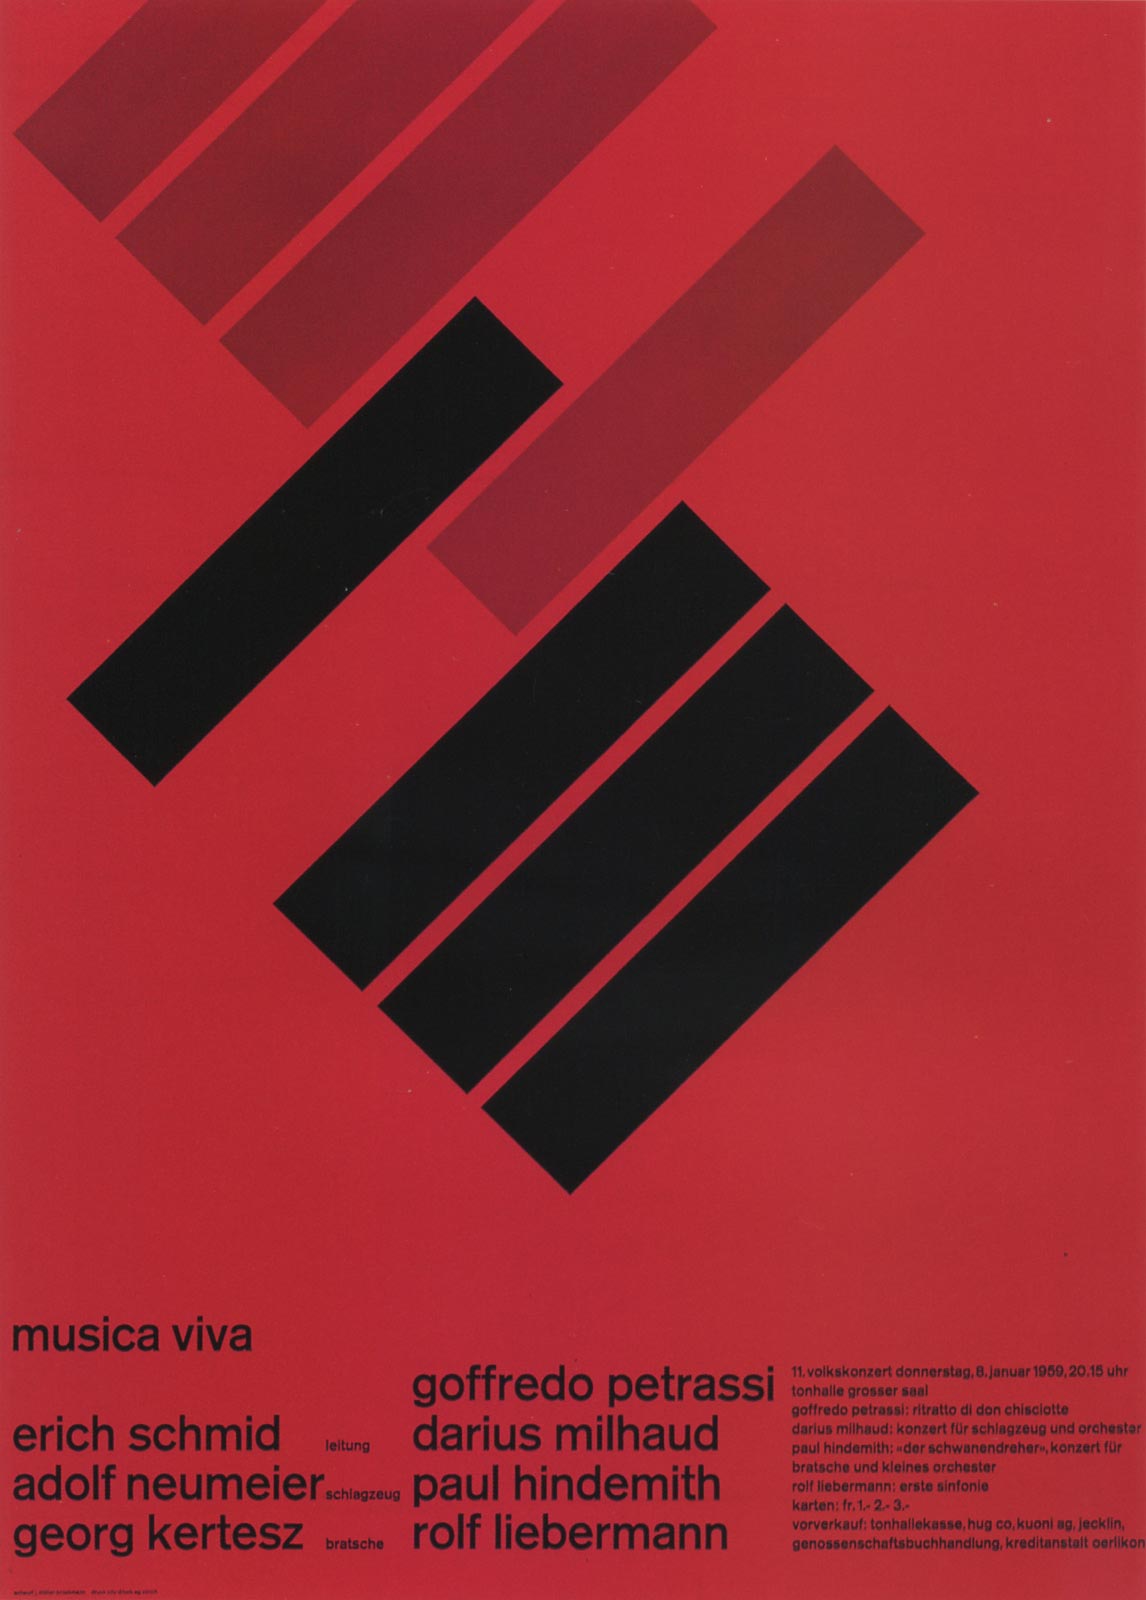 5. Zurich Tonhalle. musica viva. Concert poster, 1958